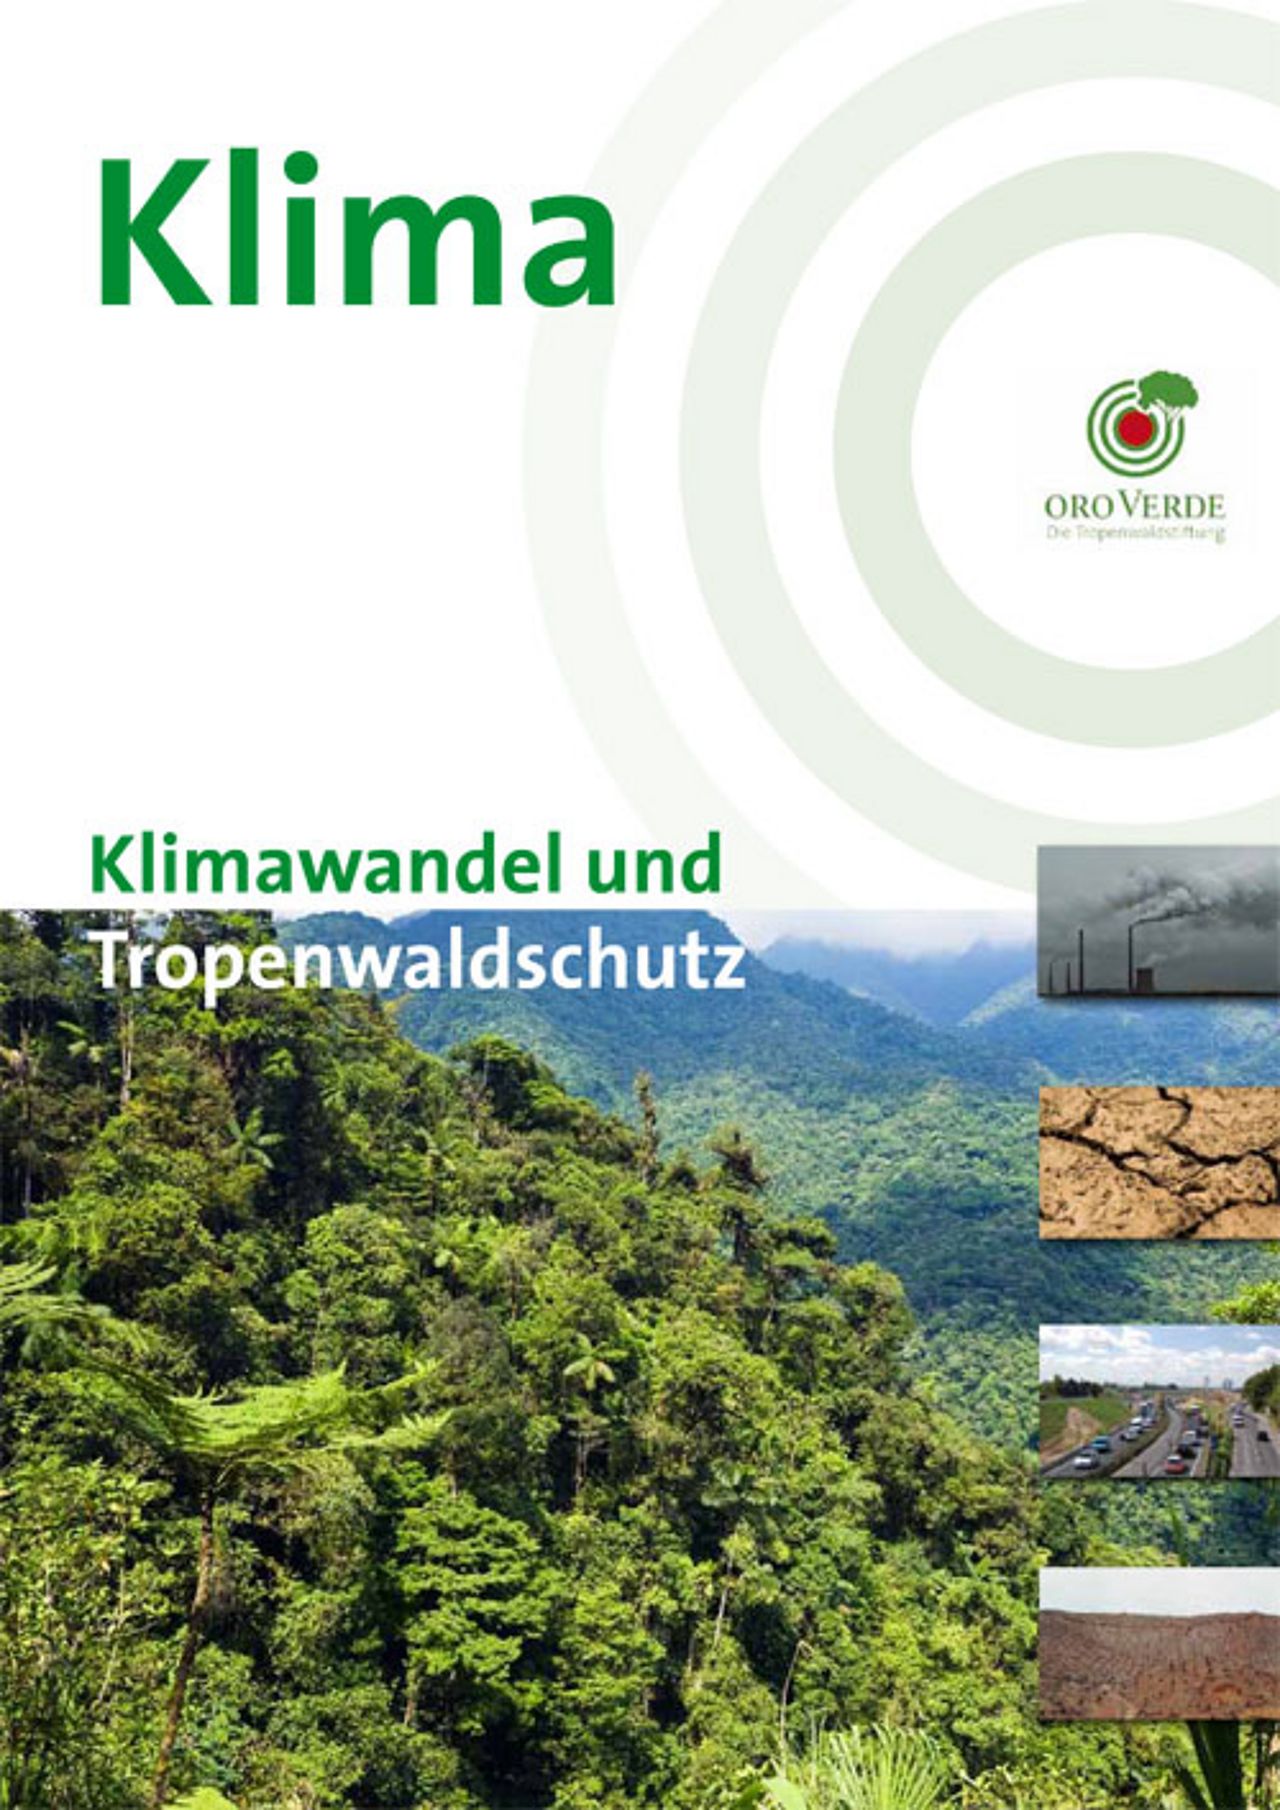 Klimawandel & Tropenwaldschutz - Ein Faktenpapier von OroVerde